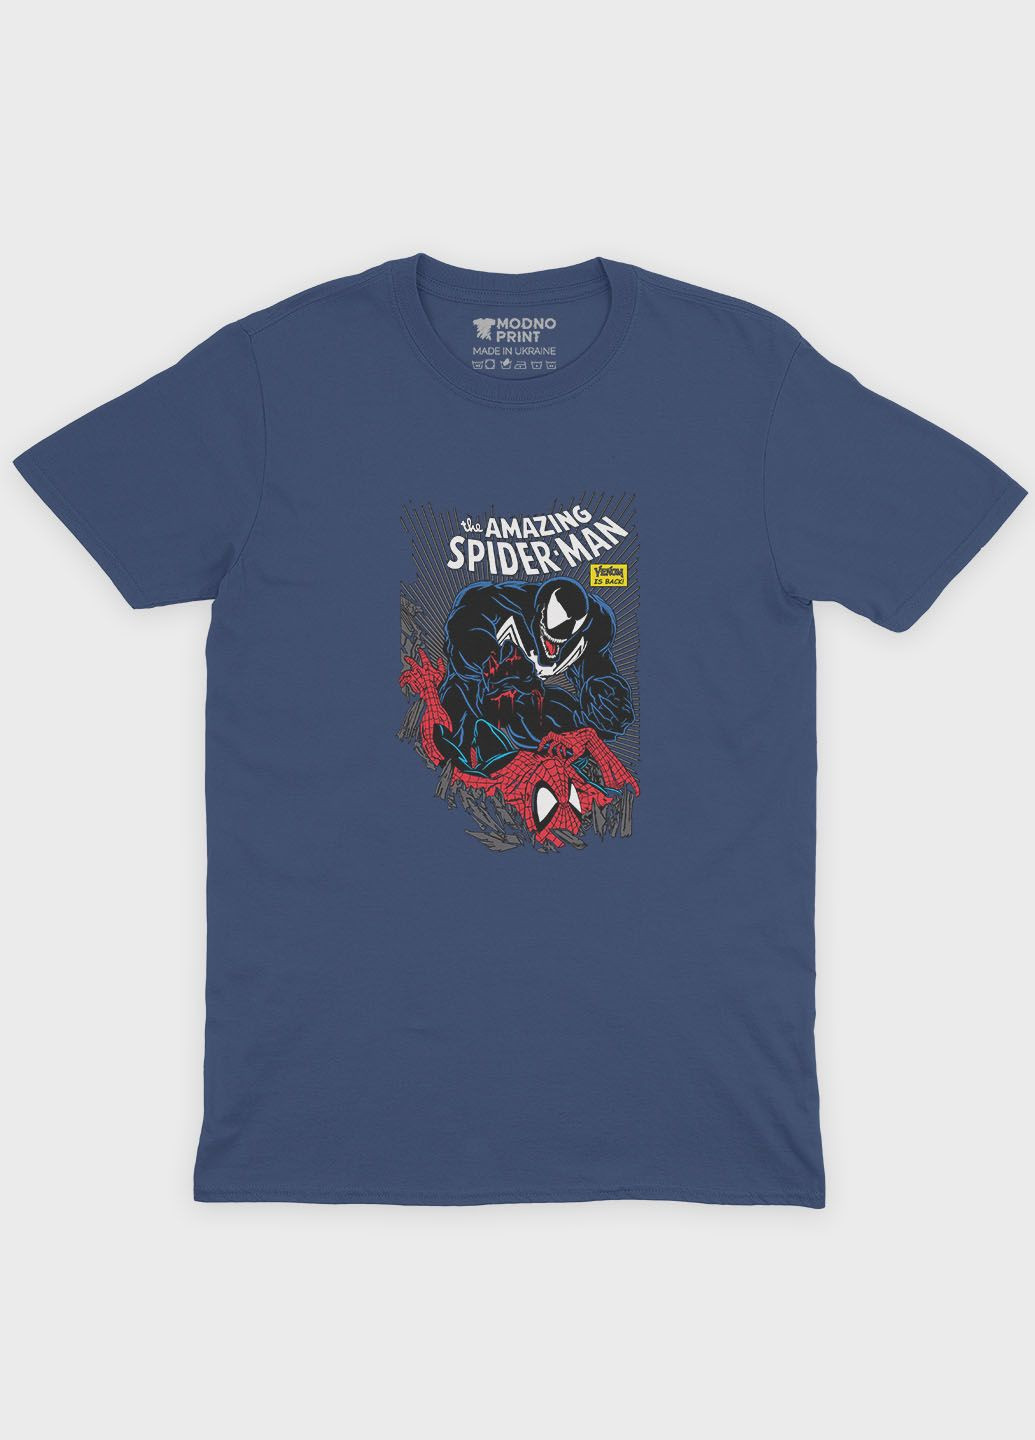 Темно-синя демісезонна футболка для хлопчика з принтом супергероя - людина-павук (ts001-1-nav-006-014-052-b) Modno